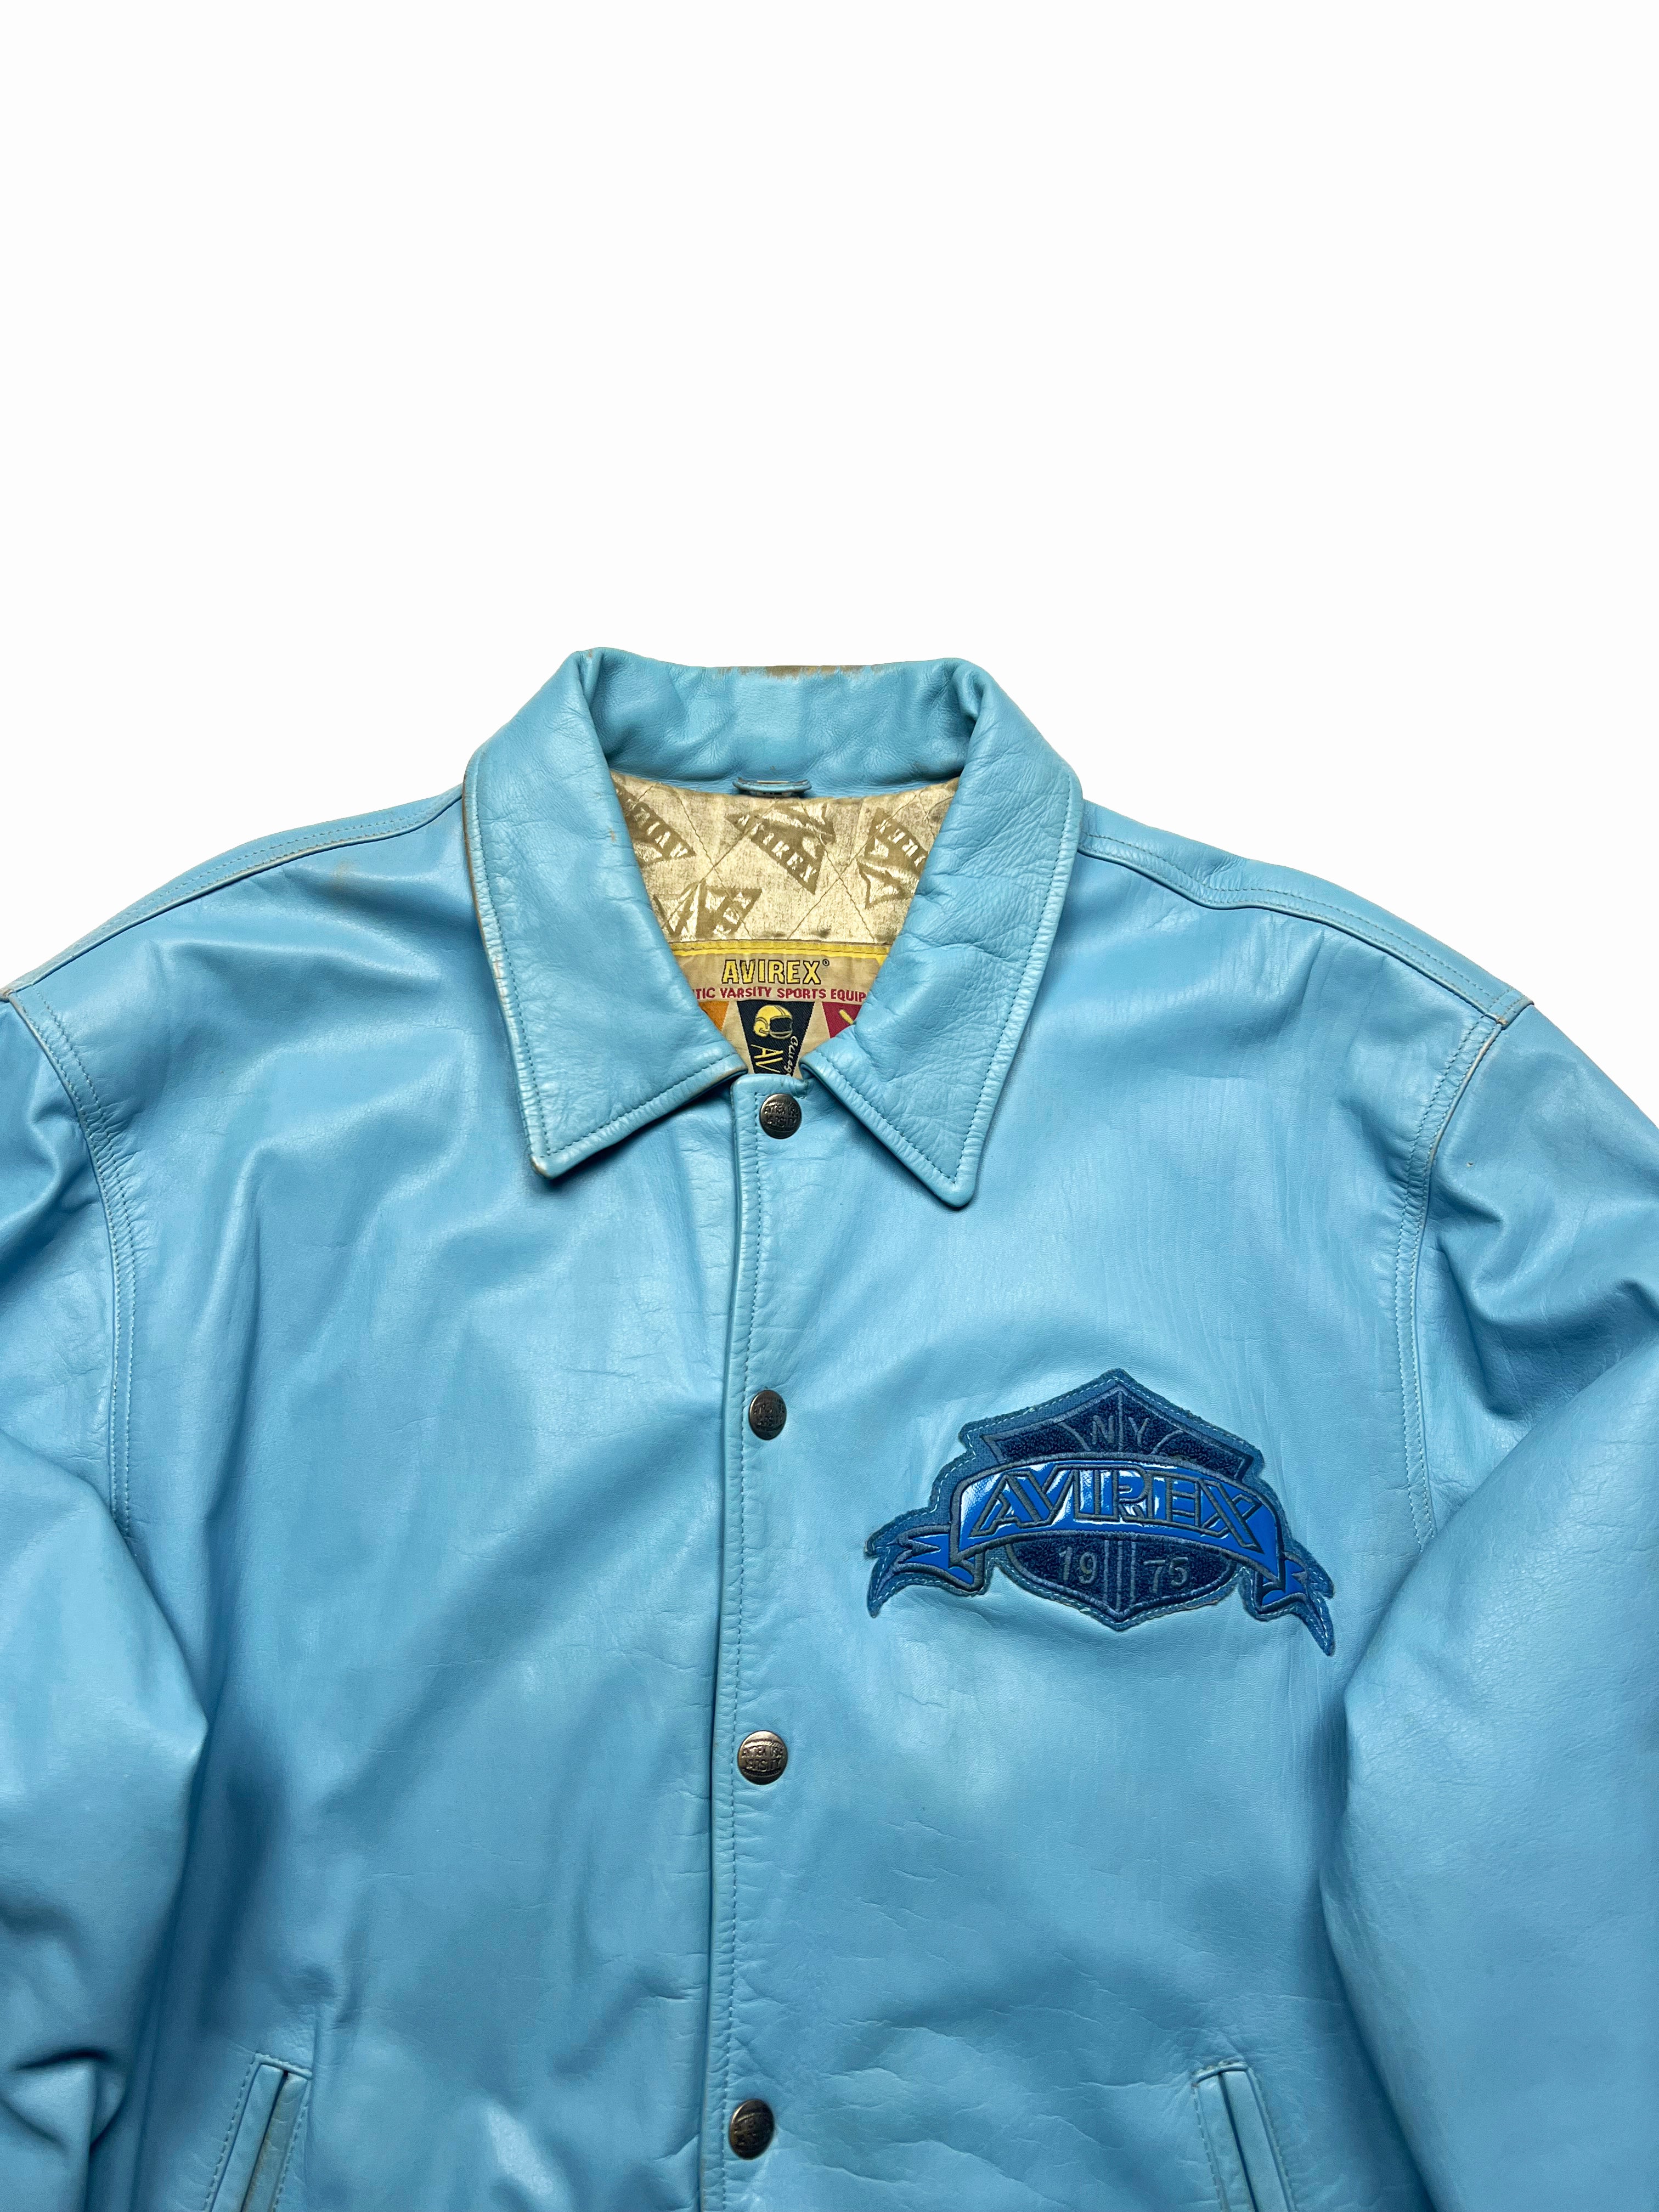 Avirex Baby Blue Leather Jacket 90's